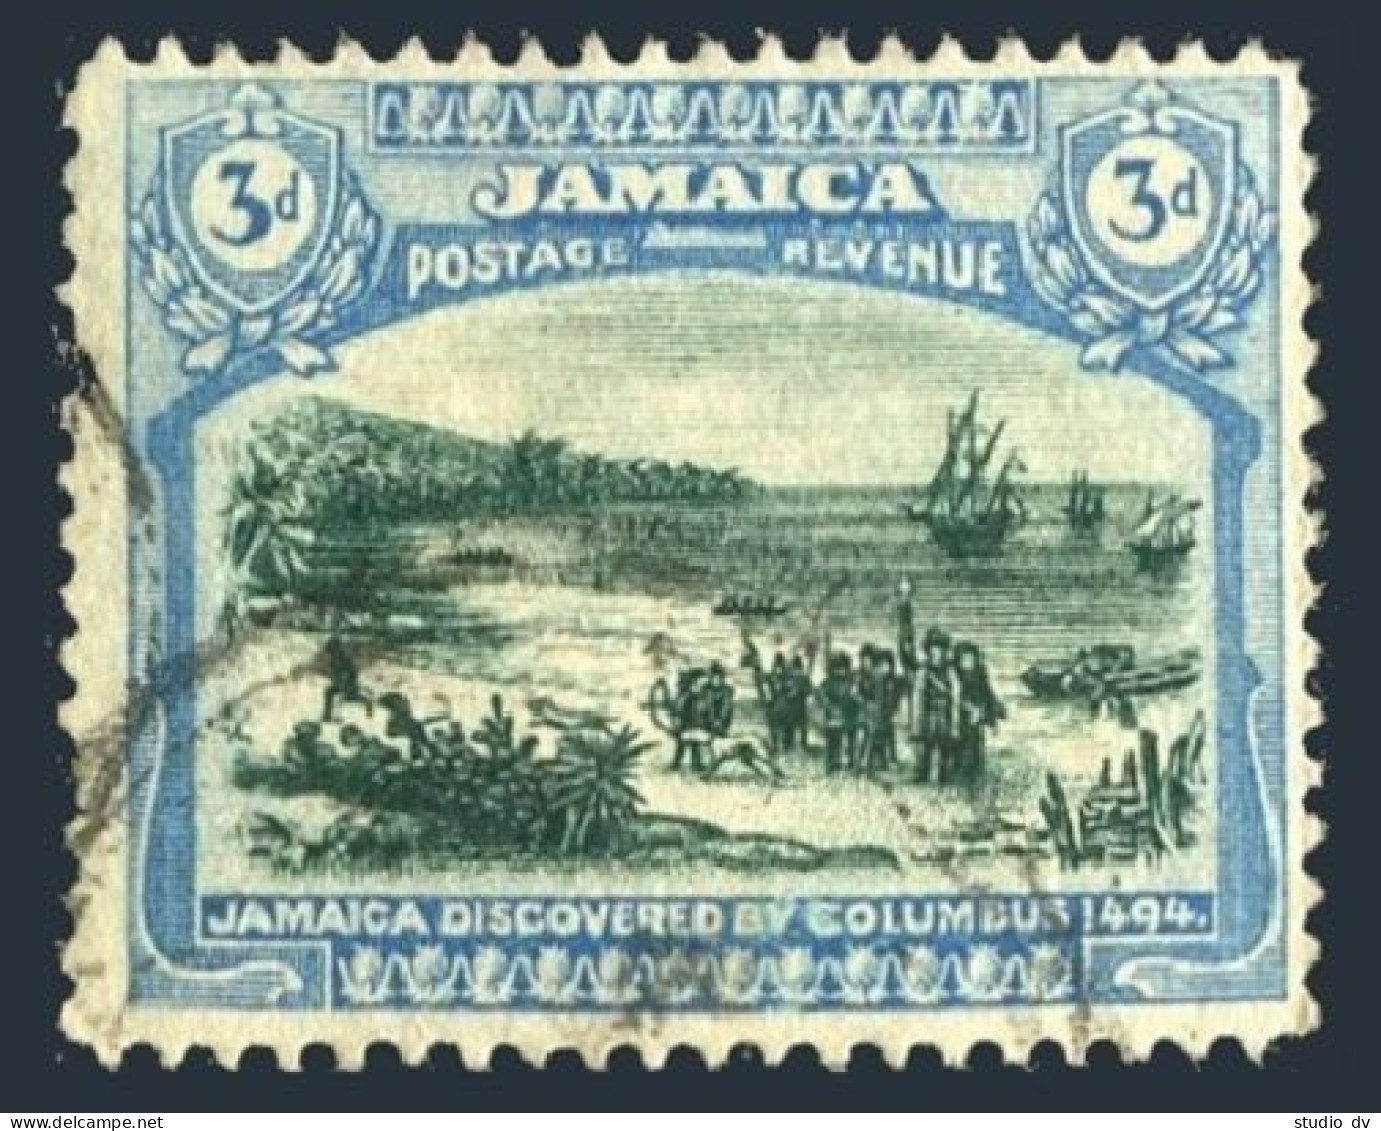 Jamaica 80, Used. Michel 81. Columbus Landing In Jamaica, 1921. - Jamaique (1962-...)